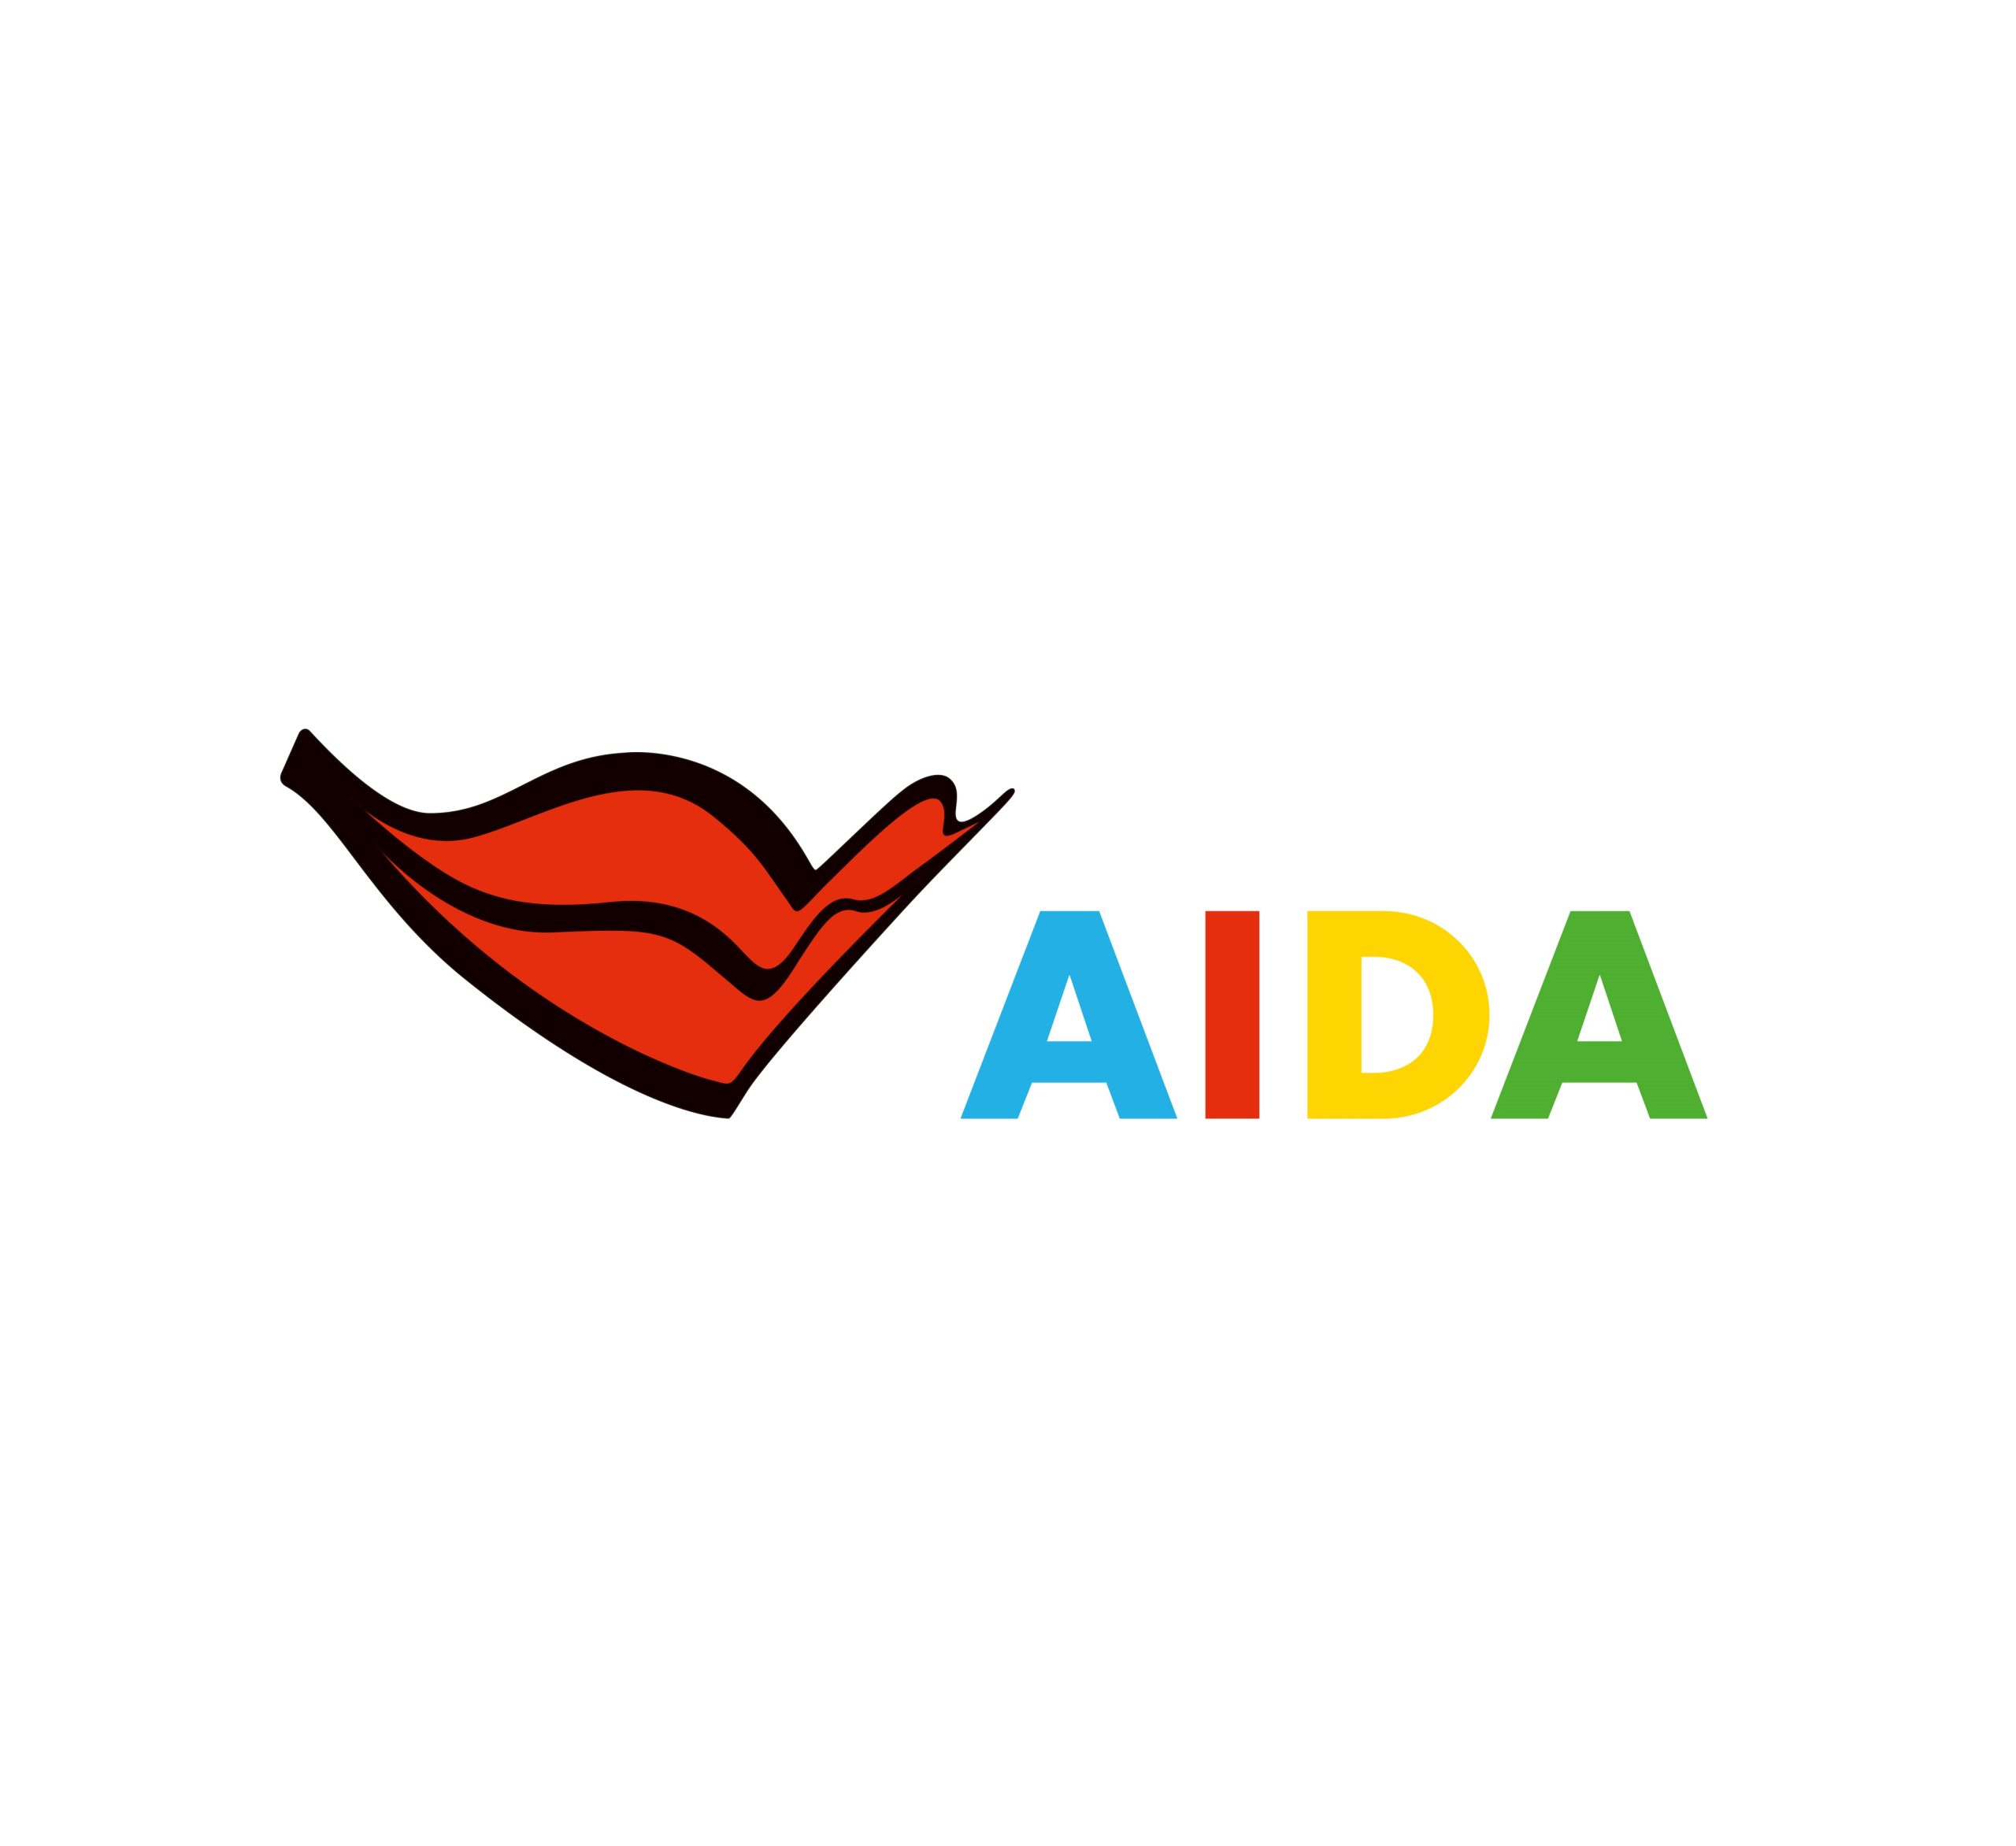 AIDA Logo_CYMK